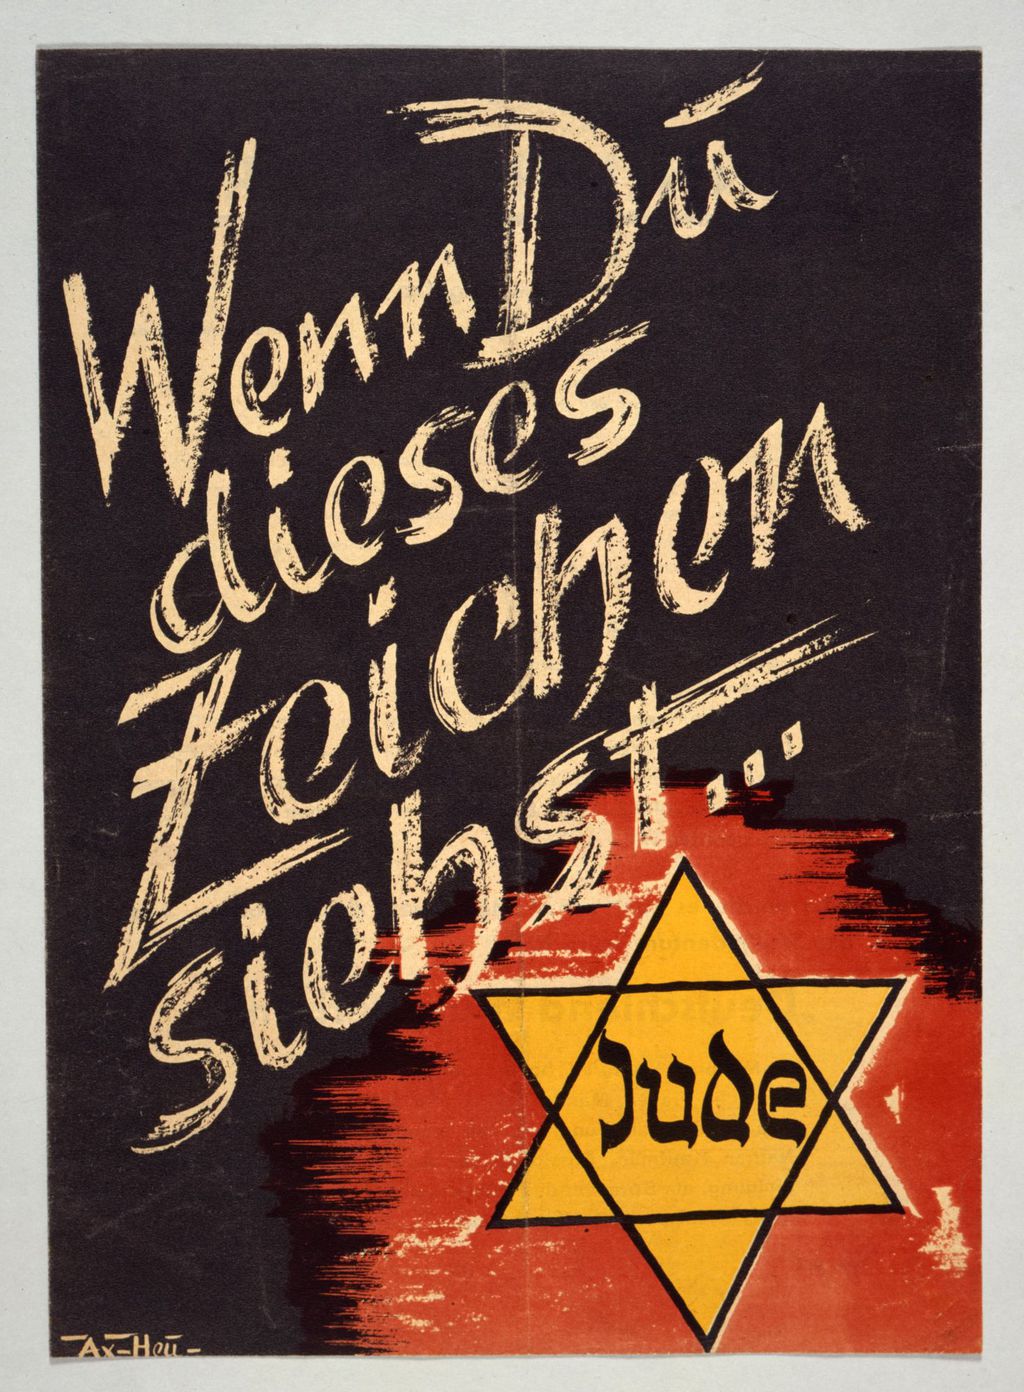 Propagandaschrift: "Wenn du dieses Zeichen siehst...", 1941